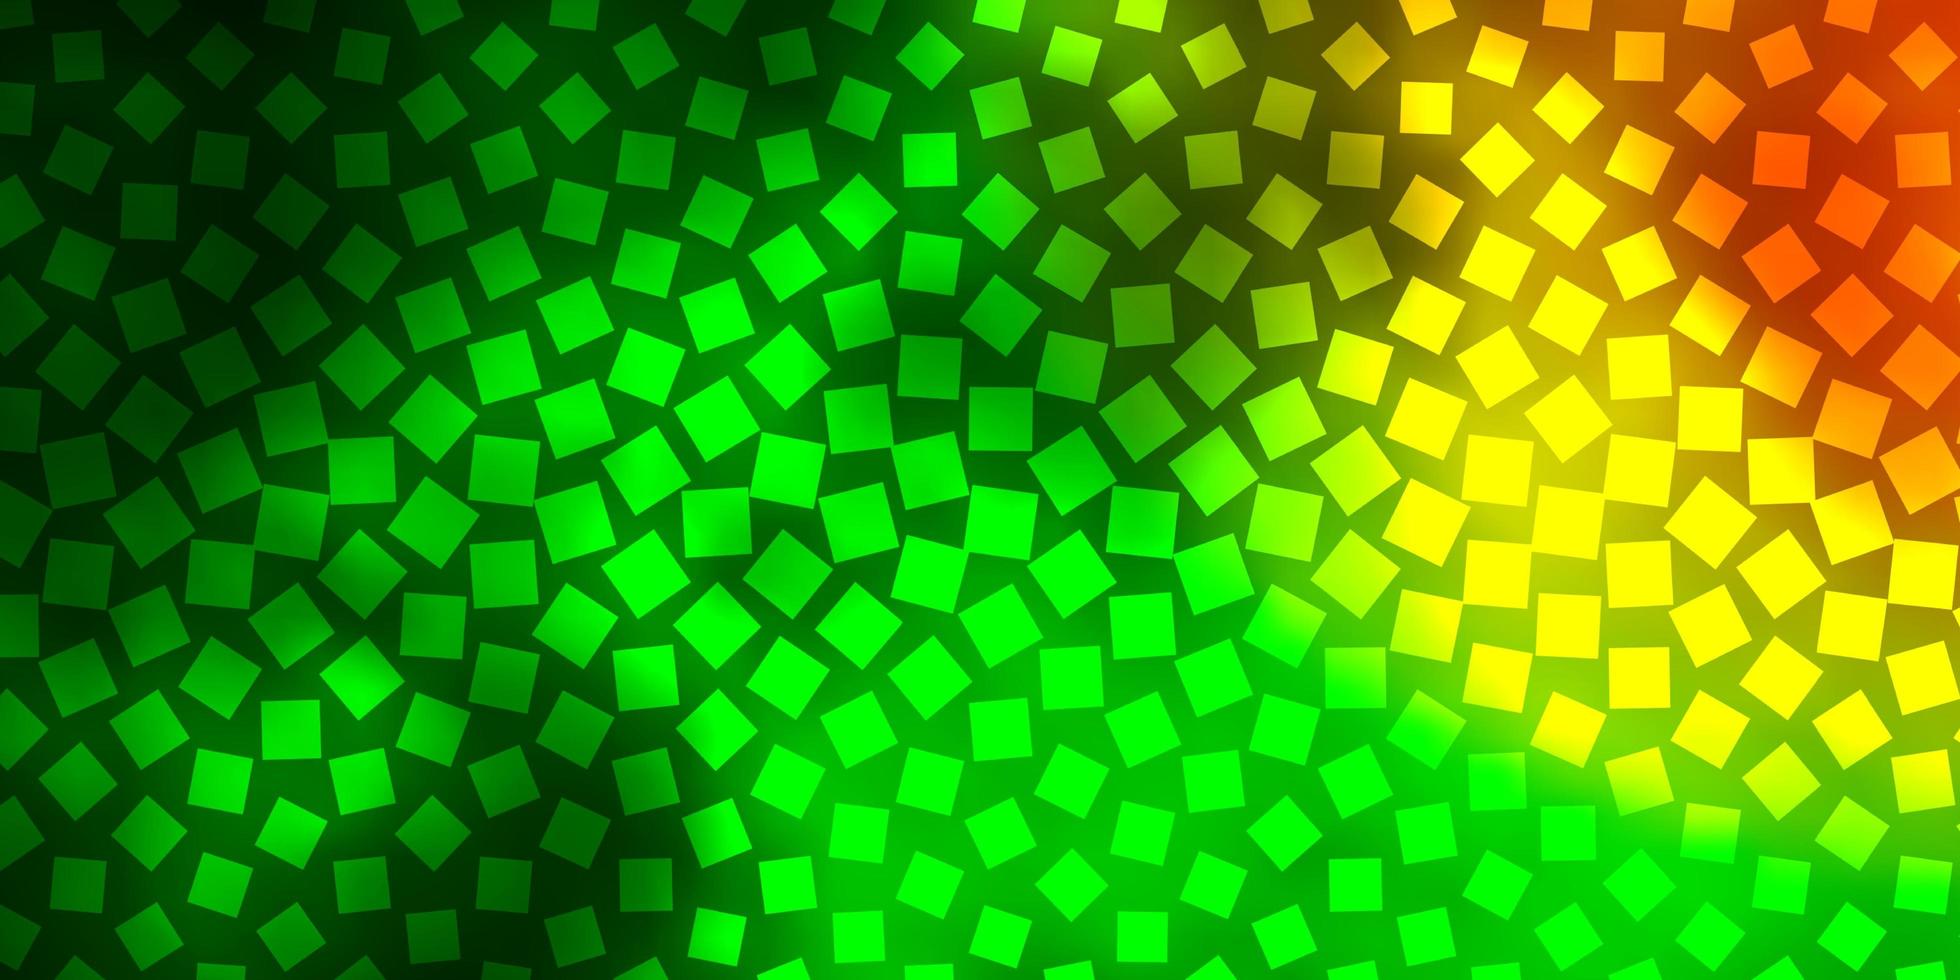 diseño de vector rojo verde oscuro con líneas rectángulos ilustración de degradado abstracto con patrón de rectángulos de colores para anuncios comerciales